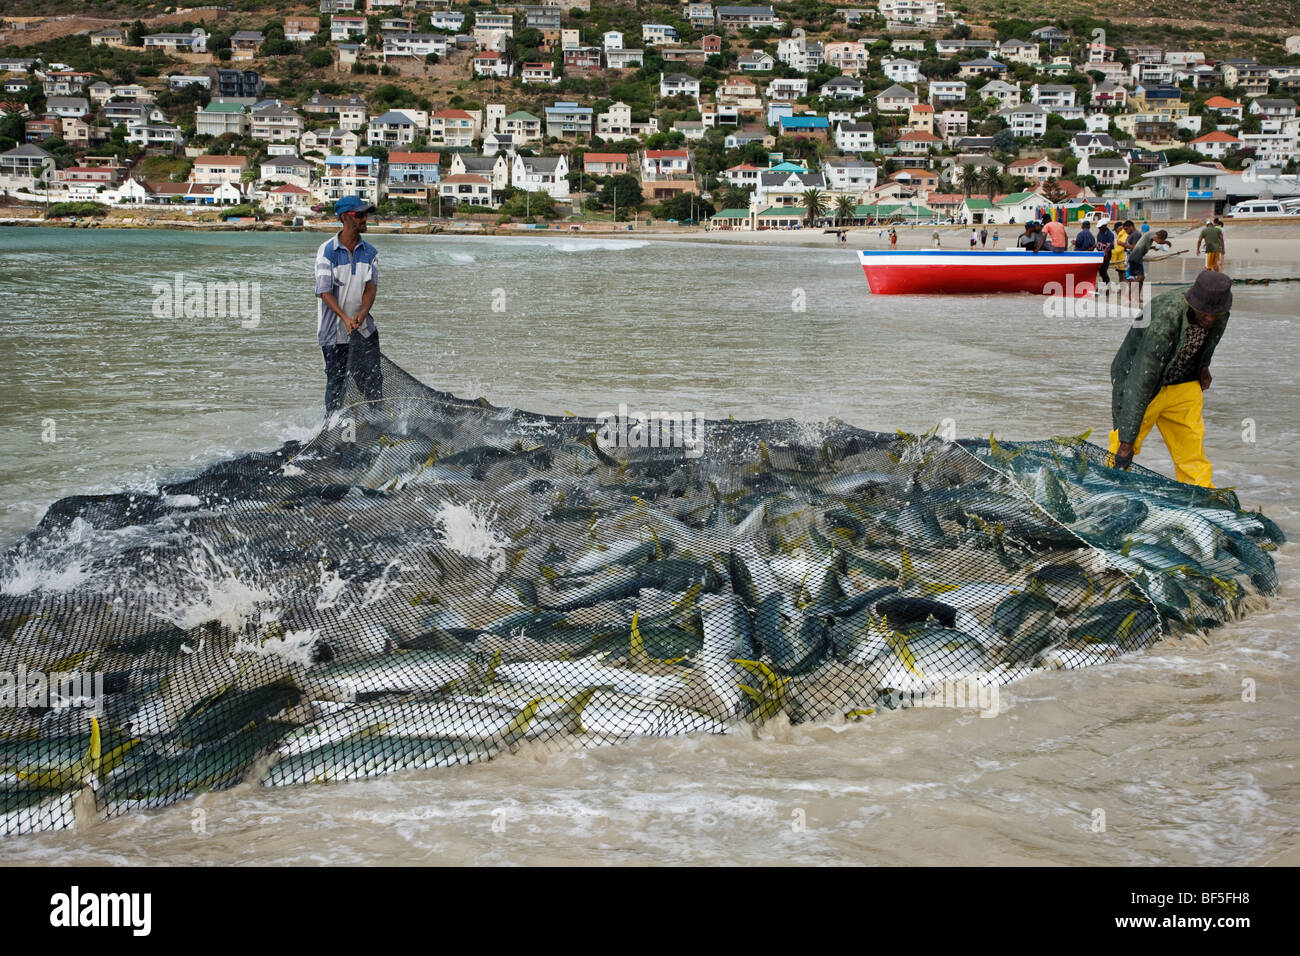 En faisant glisser les pêcheurs filet plein de poissons sériole yellowtail sur plage. Fishoek près de Cape Town Afrique du Sud Banque D'Images